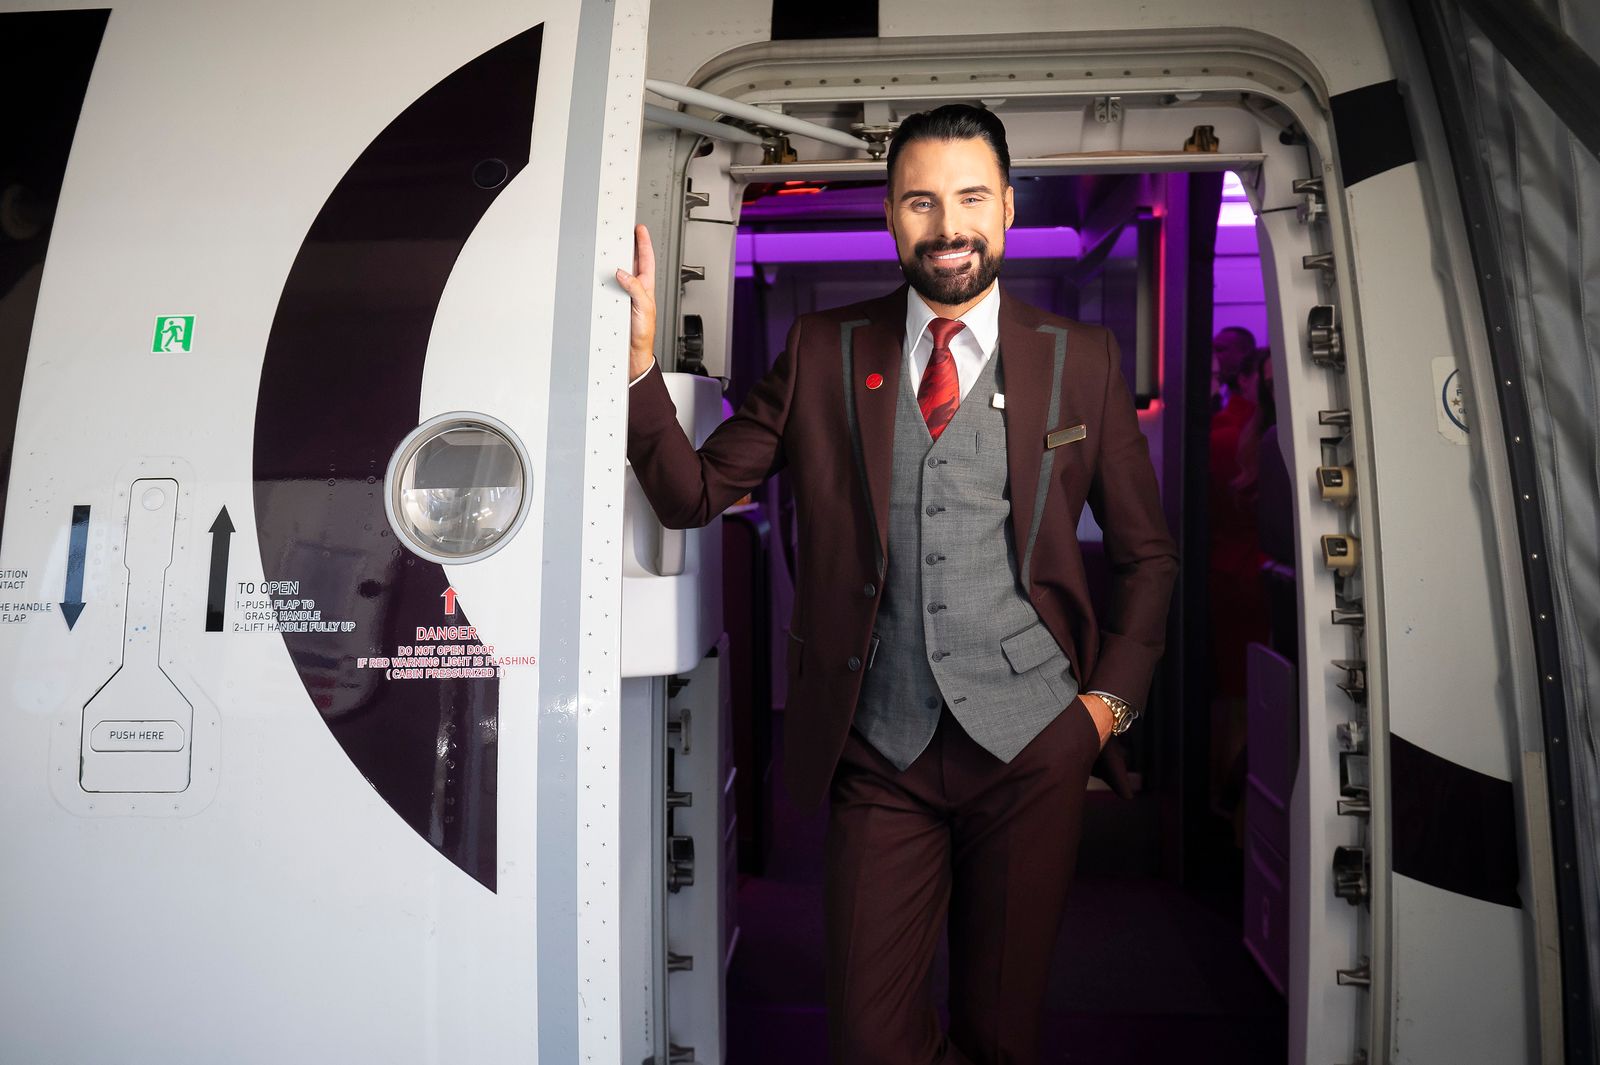 Rylan Clark welcoming passengers onboard a Virgin Atlantic flight